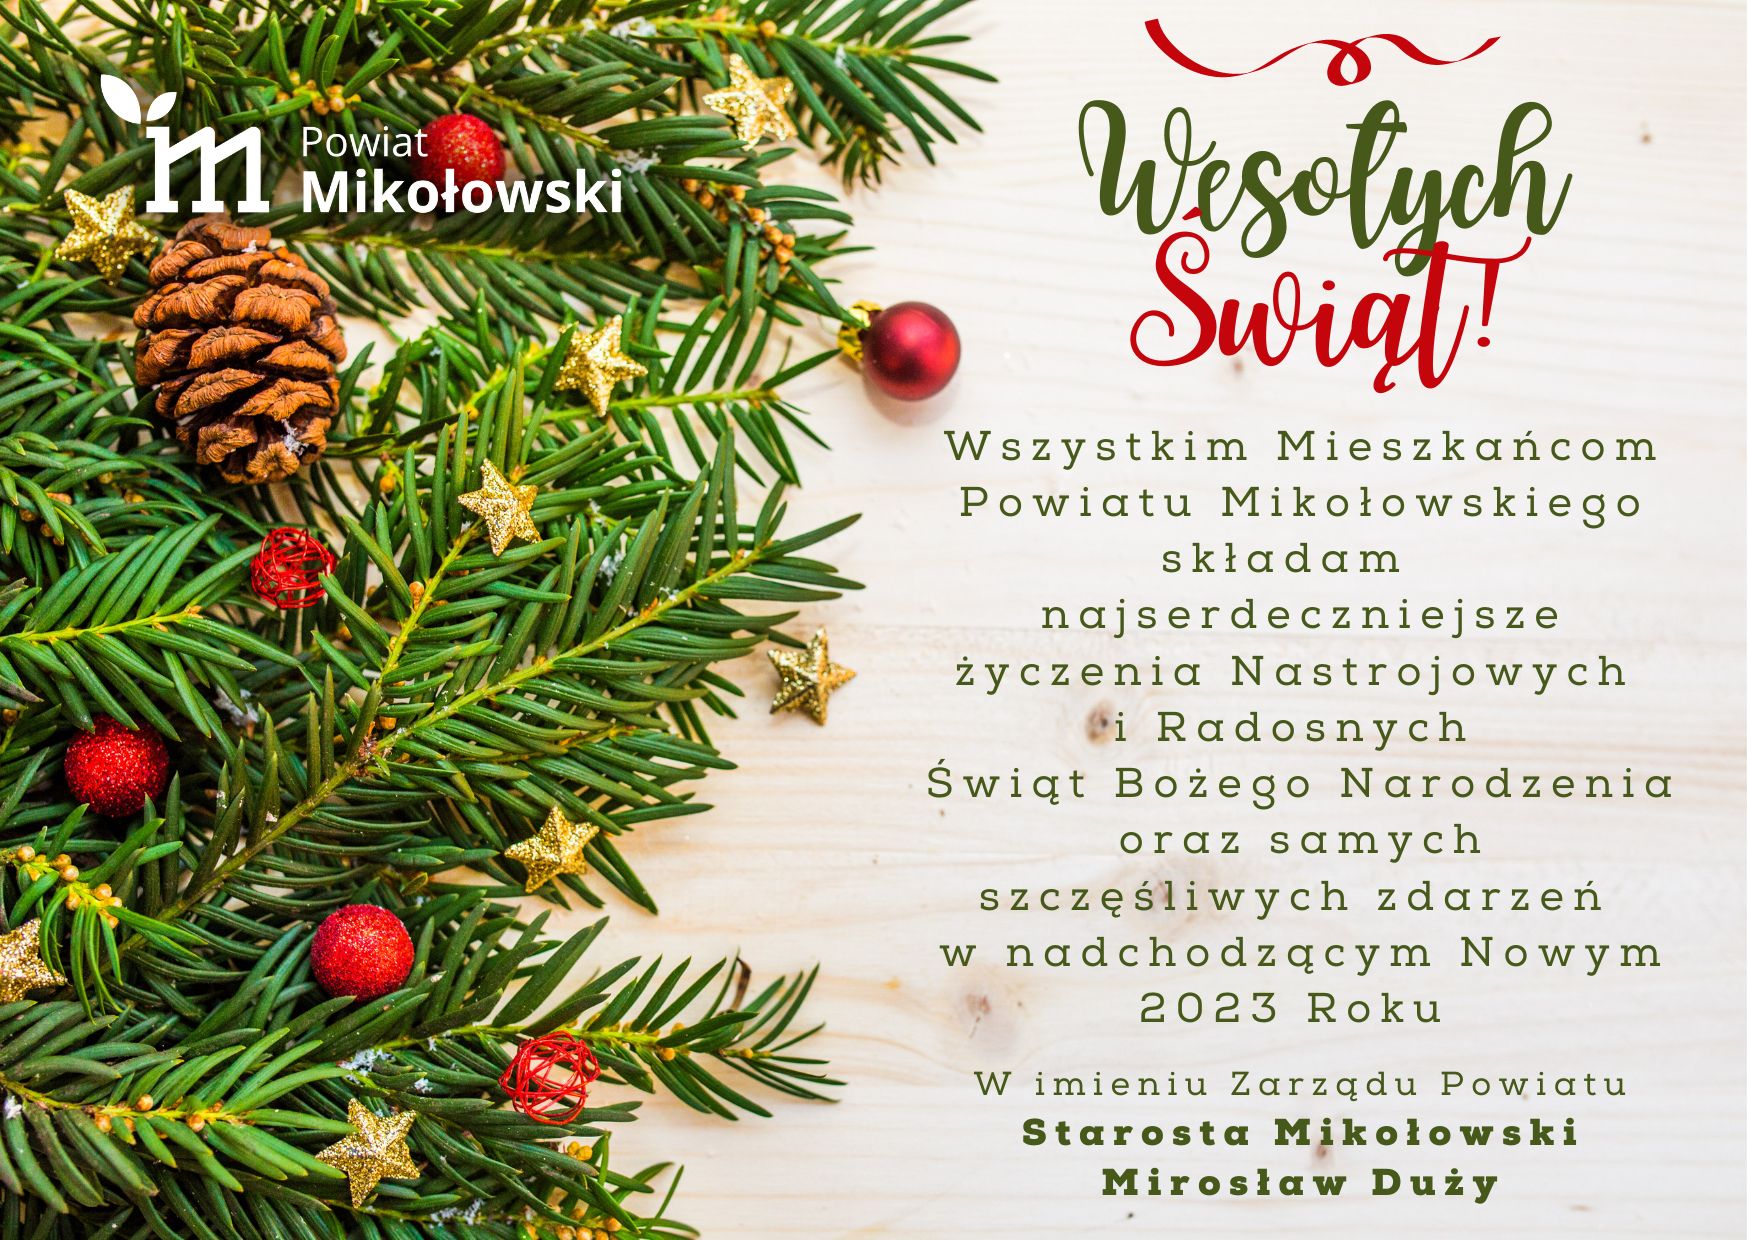 Życzenia Bożonarodzeniowe starosty mikołowskiego